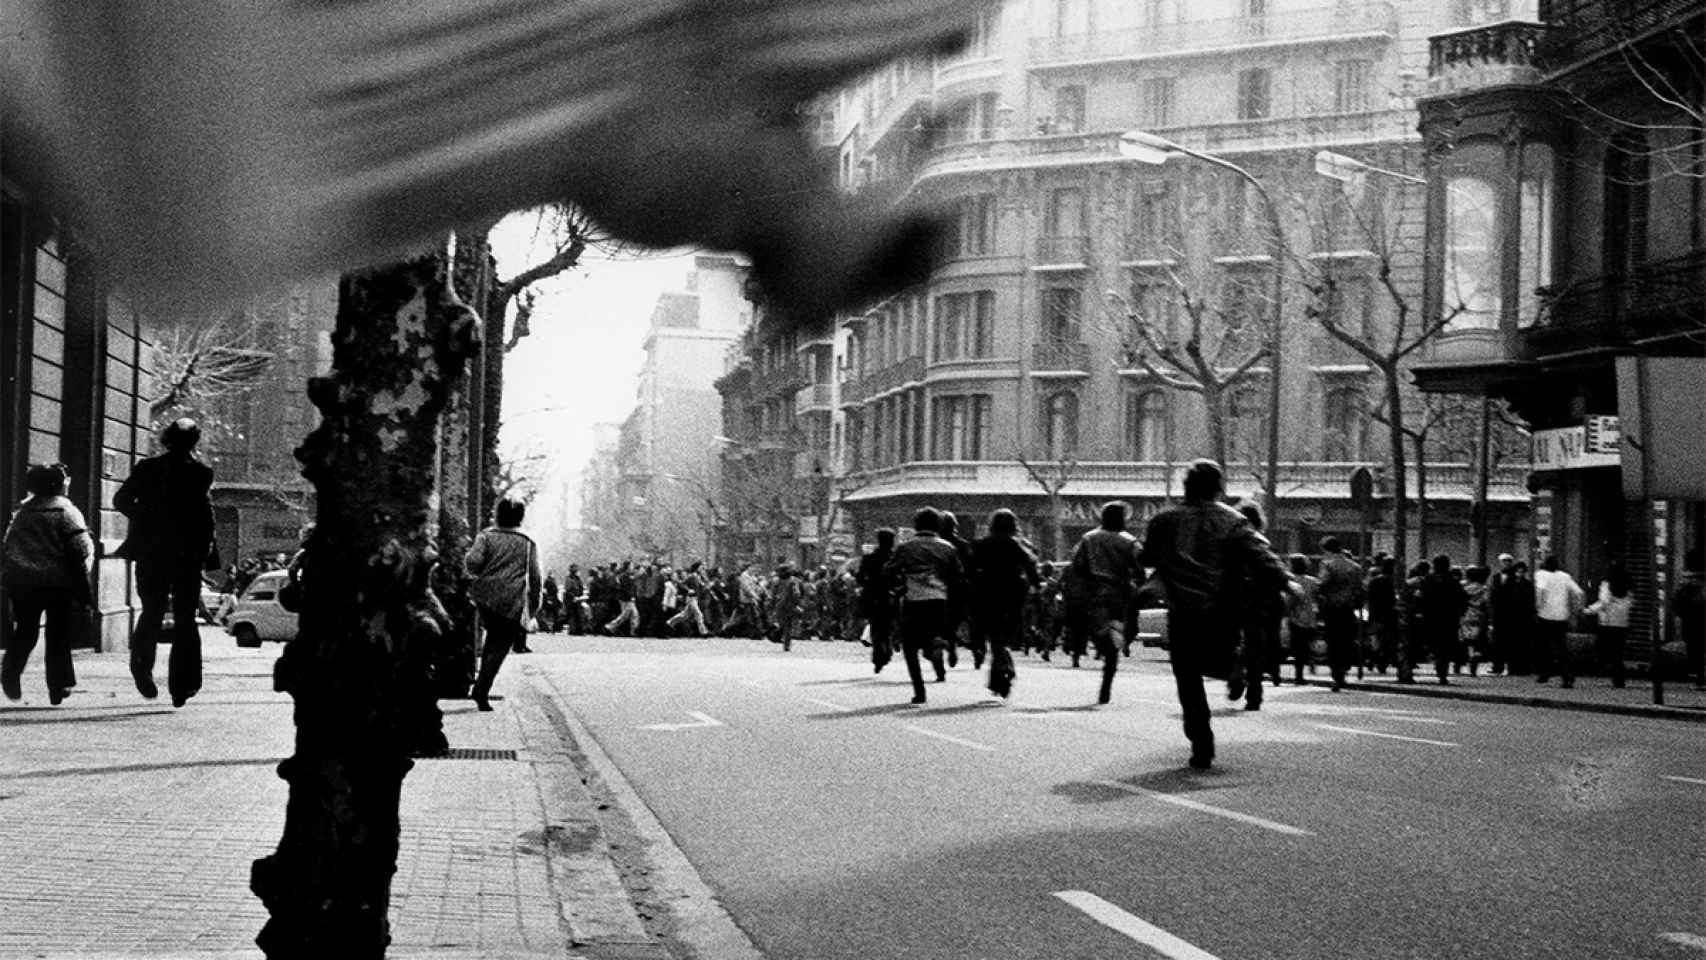 Pilar Aymerich: 'Personas huyendo de un cordón policial', 1976. De la serie “Los ojos que espían”. © Pilar Aymerich